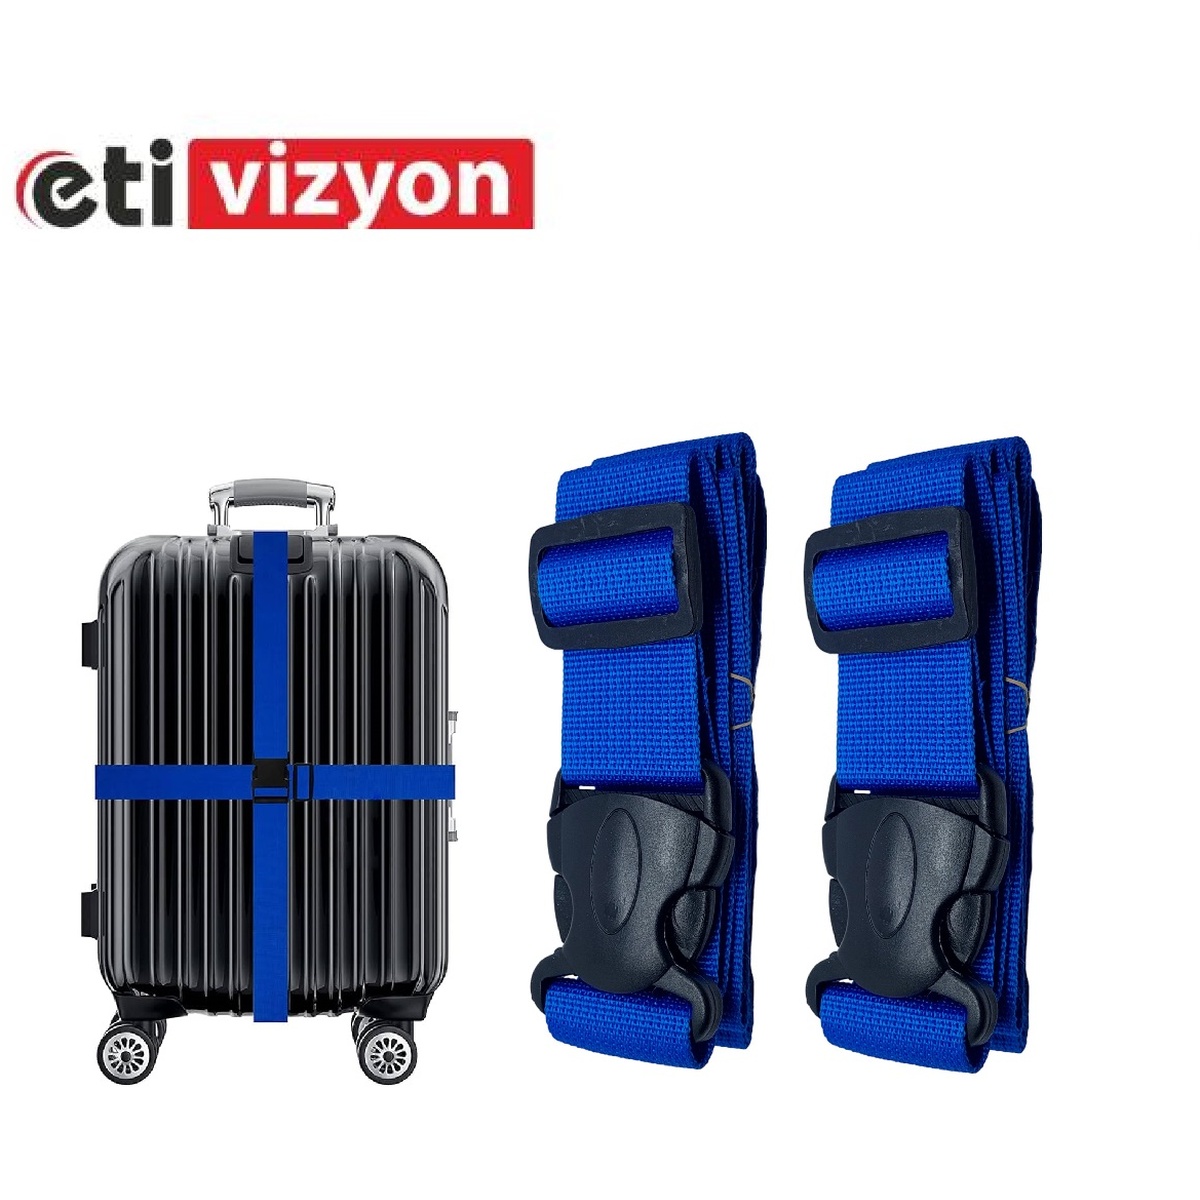 Etivizyon Valiz Bavul Emniyet Kemeri 2 Adet Mavi